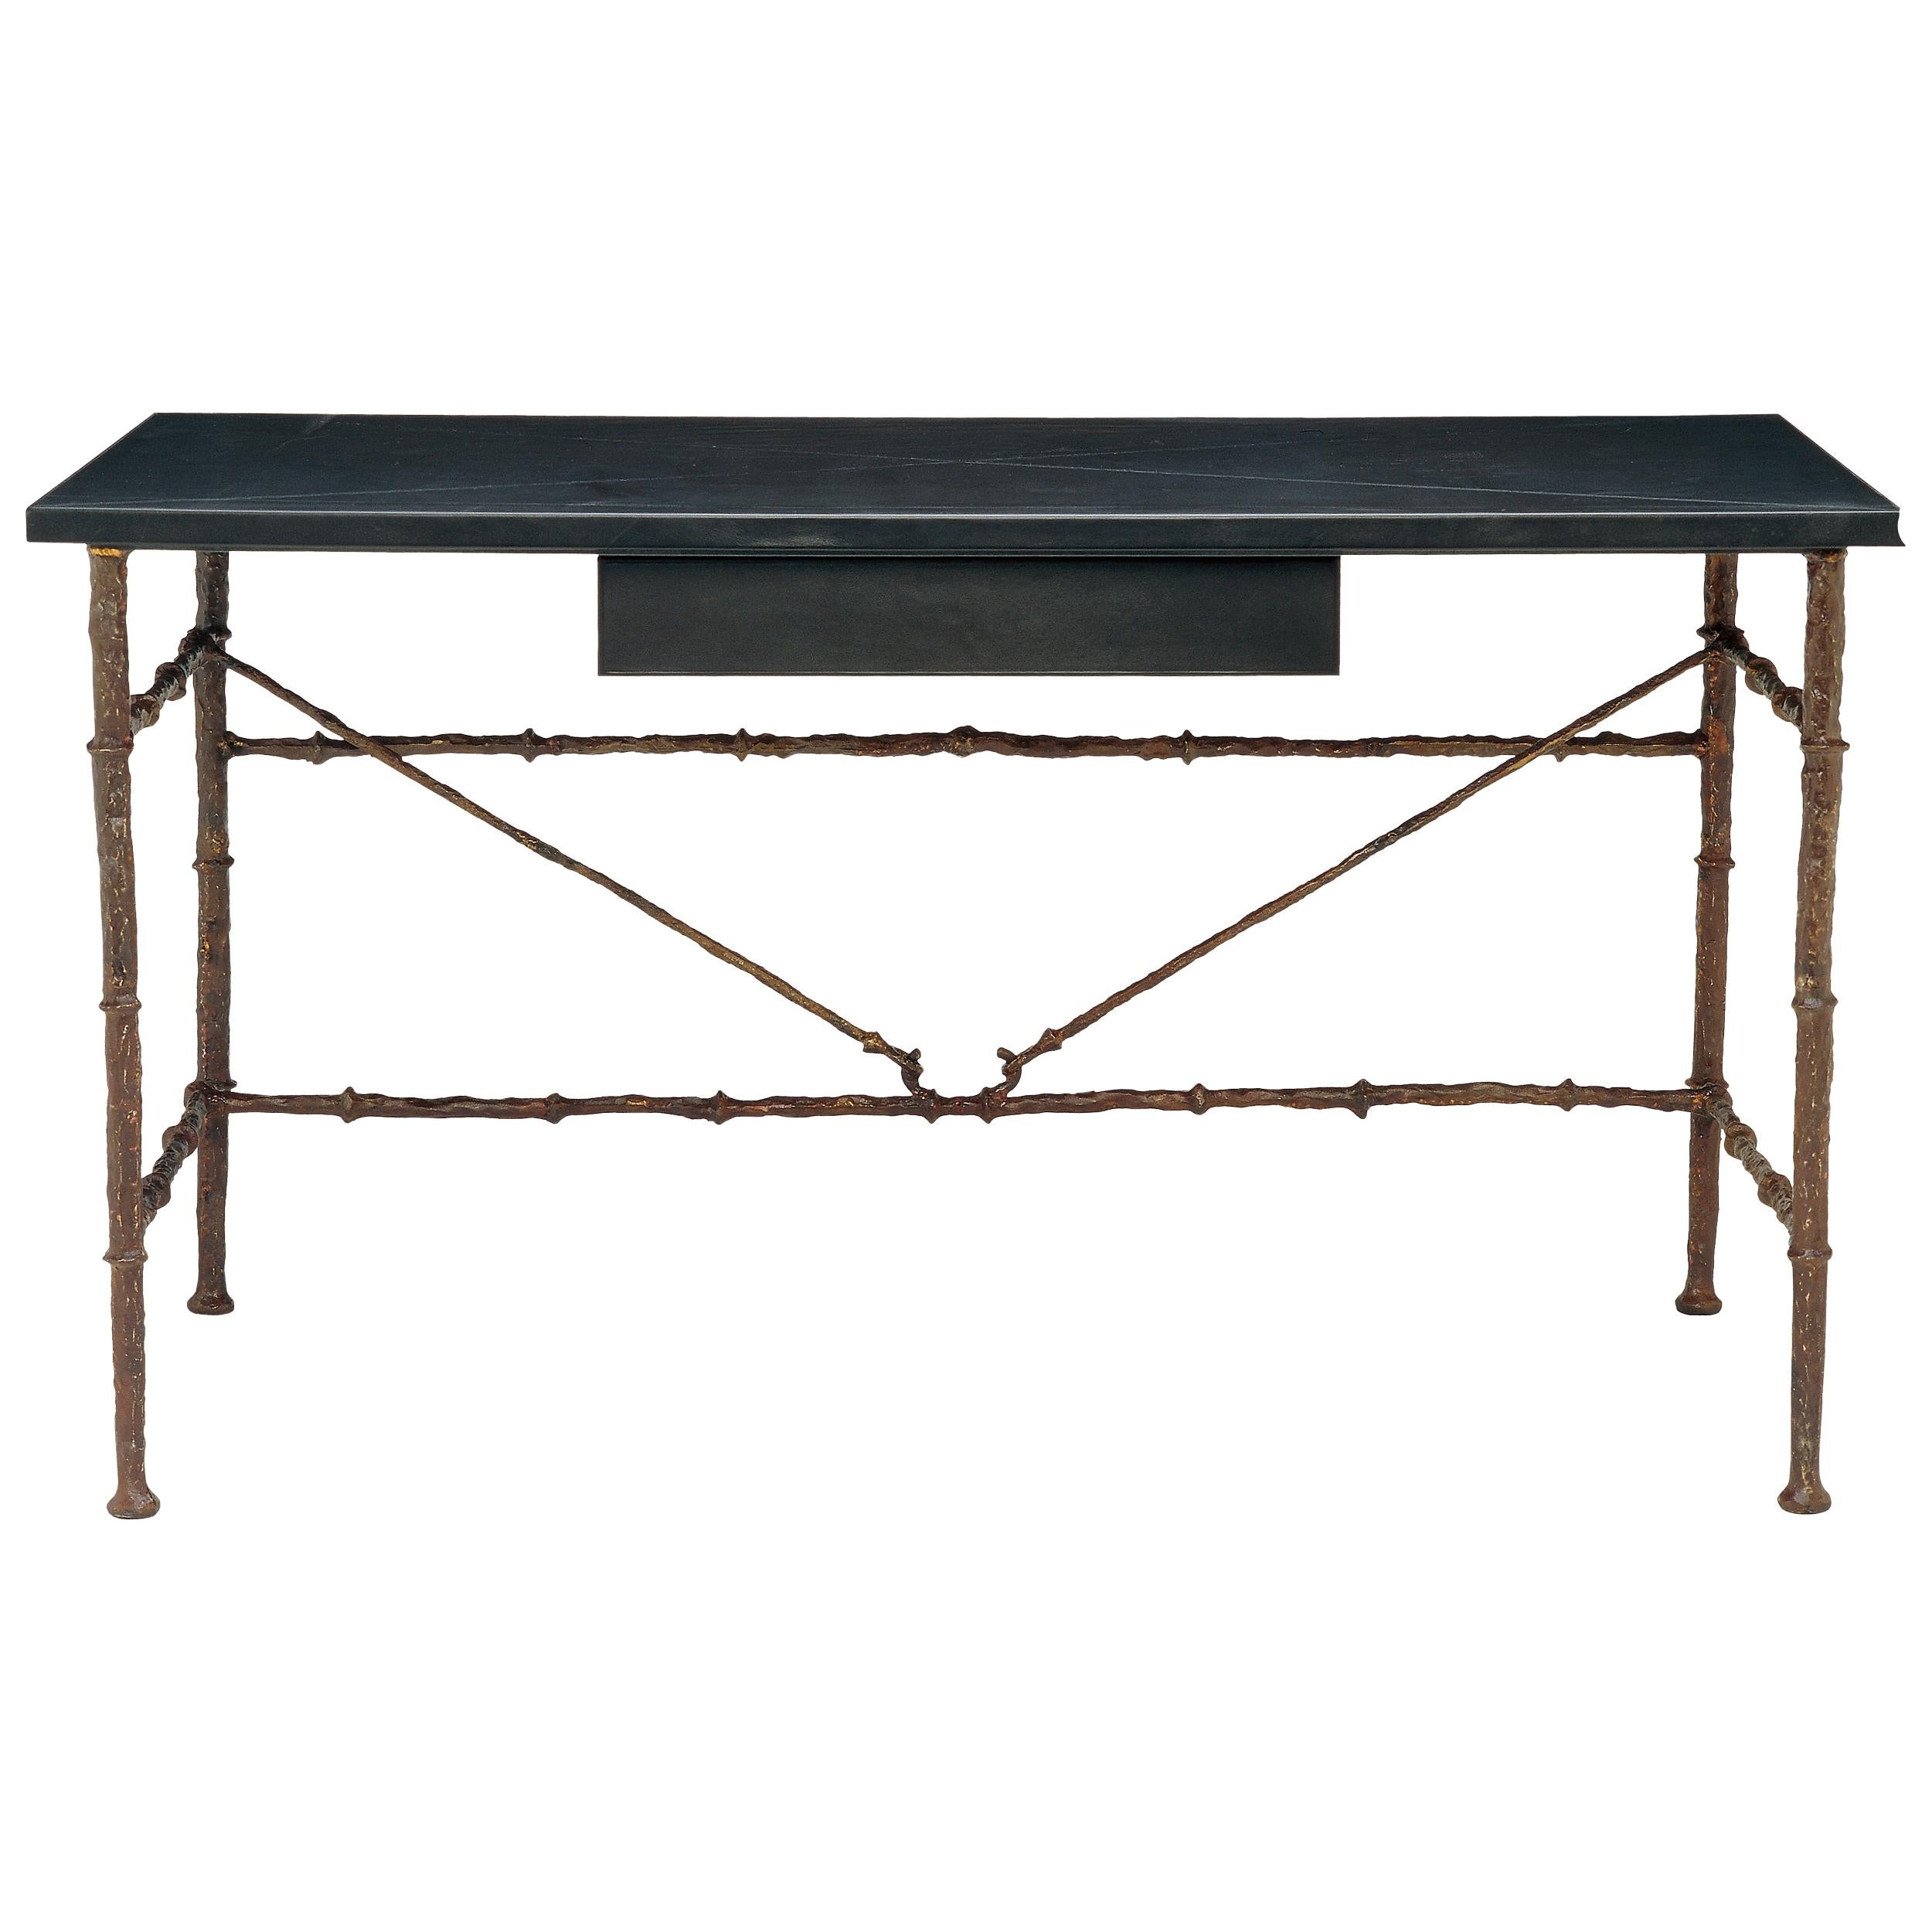 Bronze-Schreibtisch mit schwarz oder braunem Leder umwickeltem Oberteil